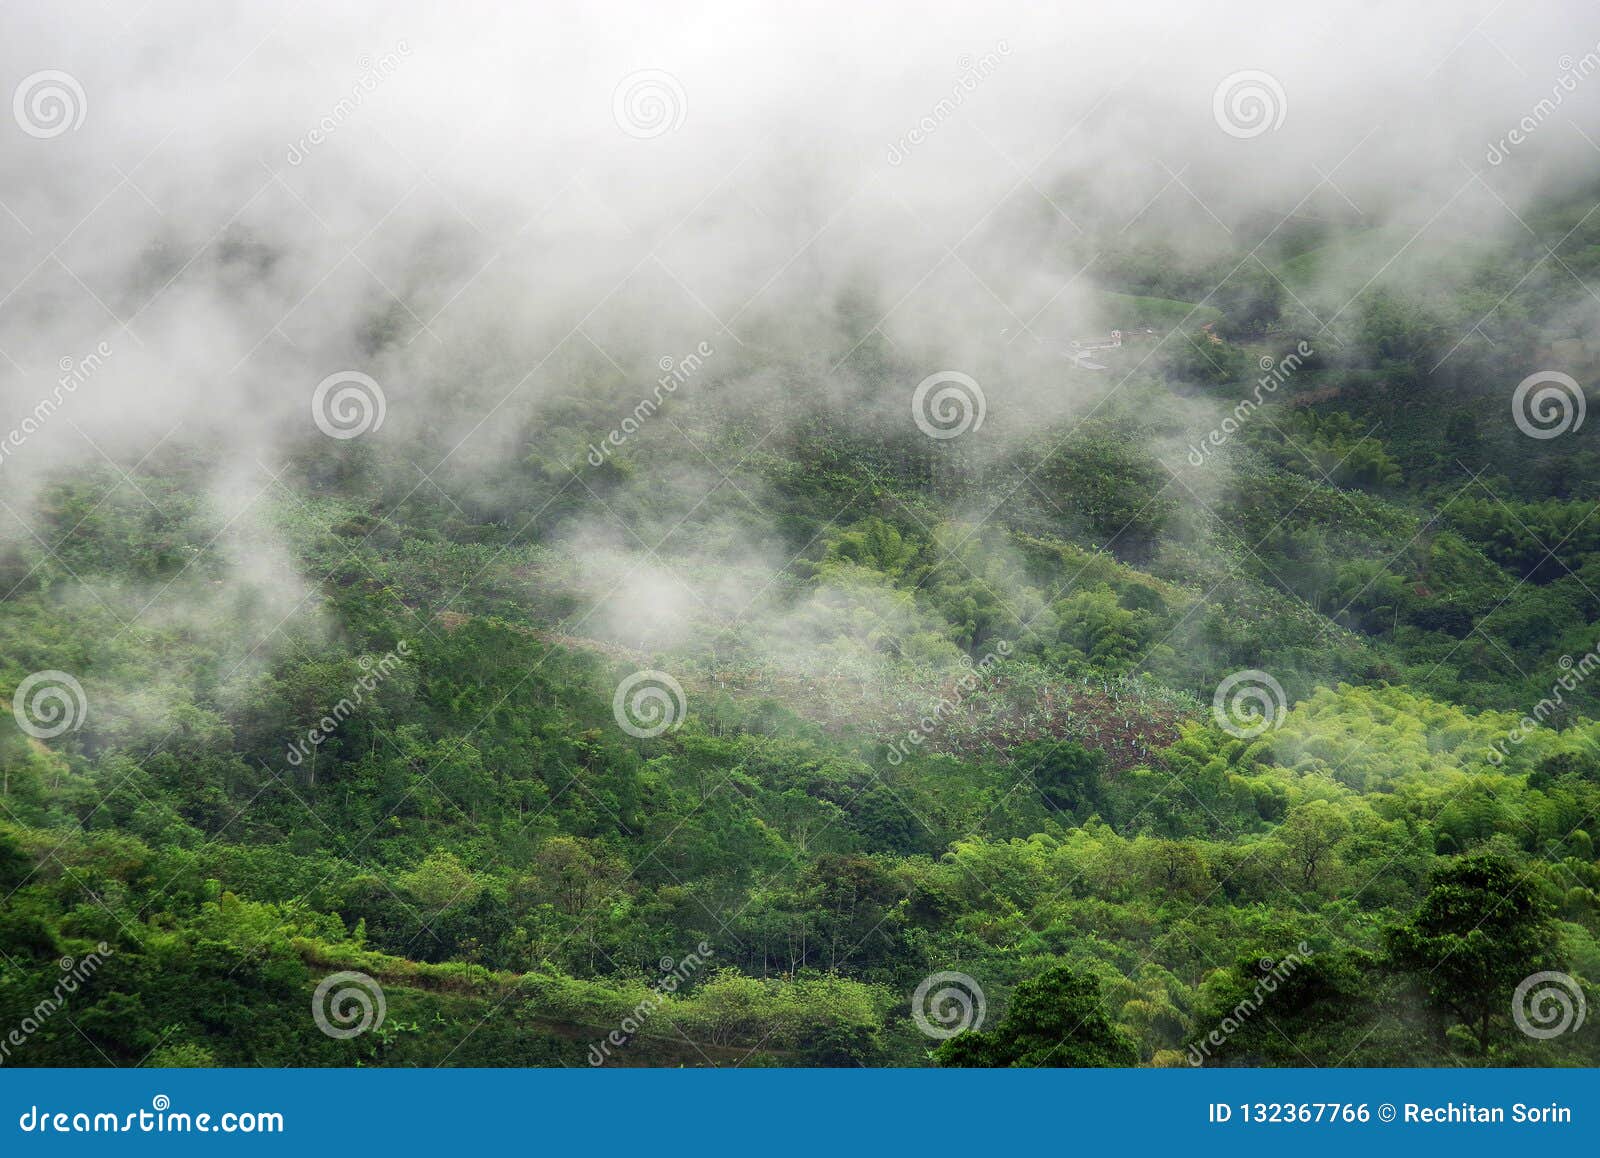 foggy landscape in buenavista, quindio